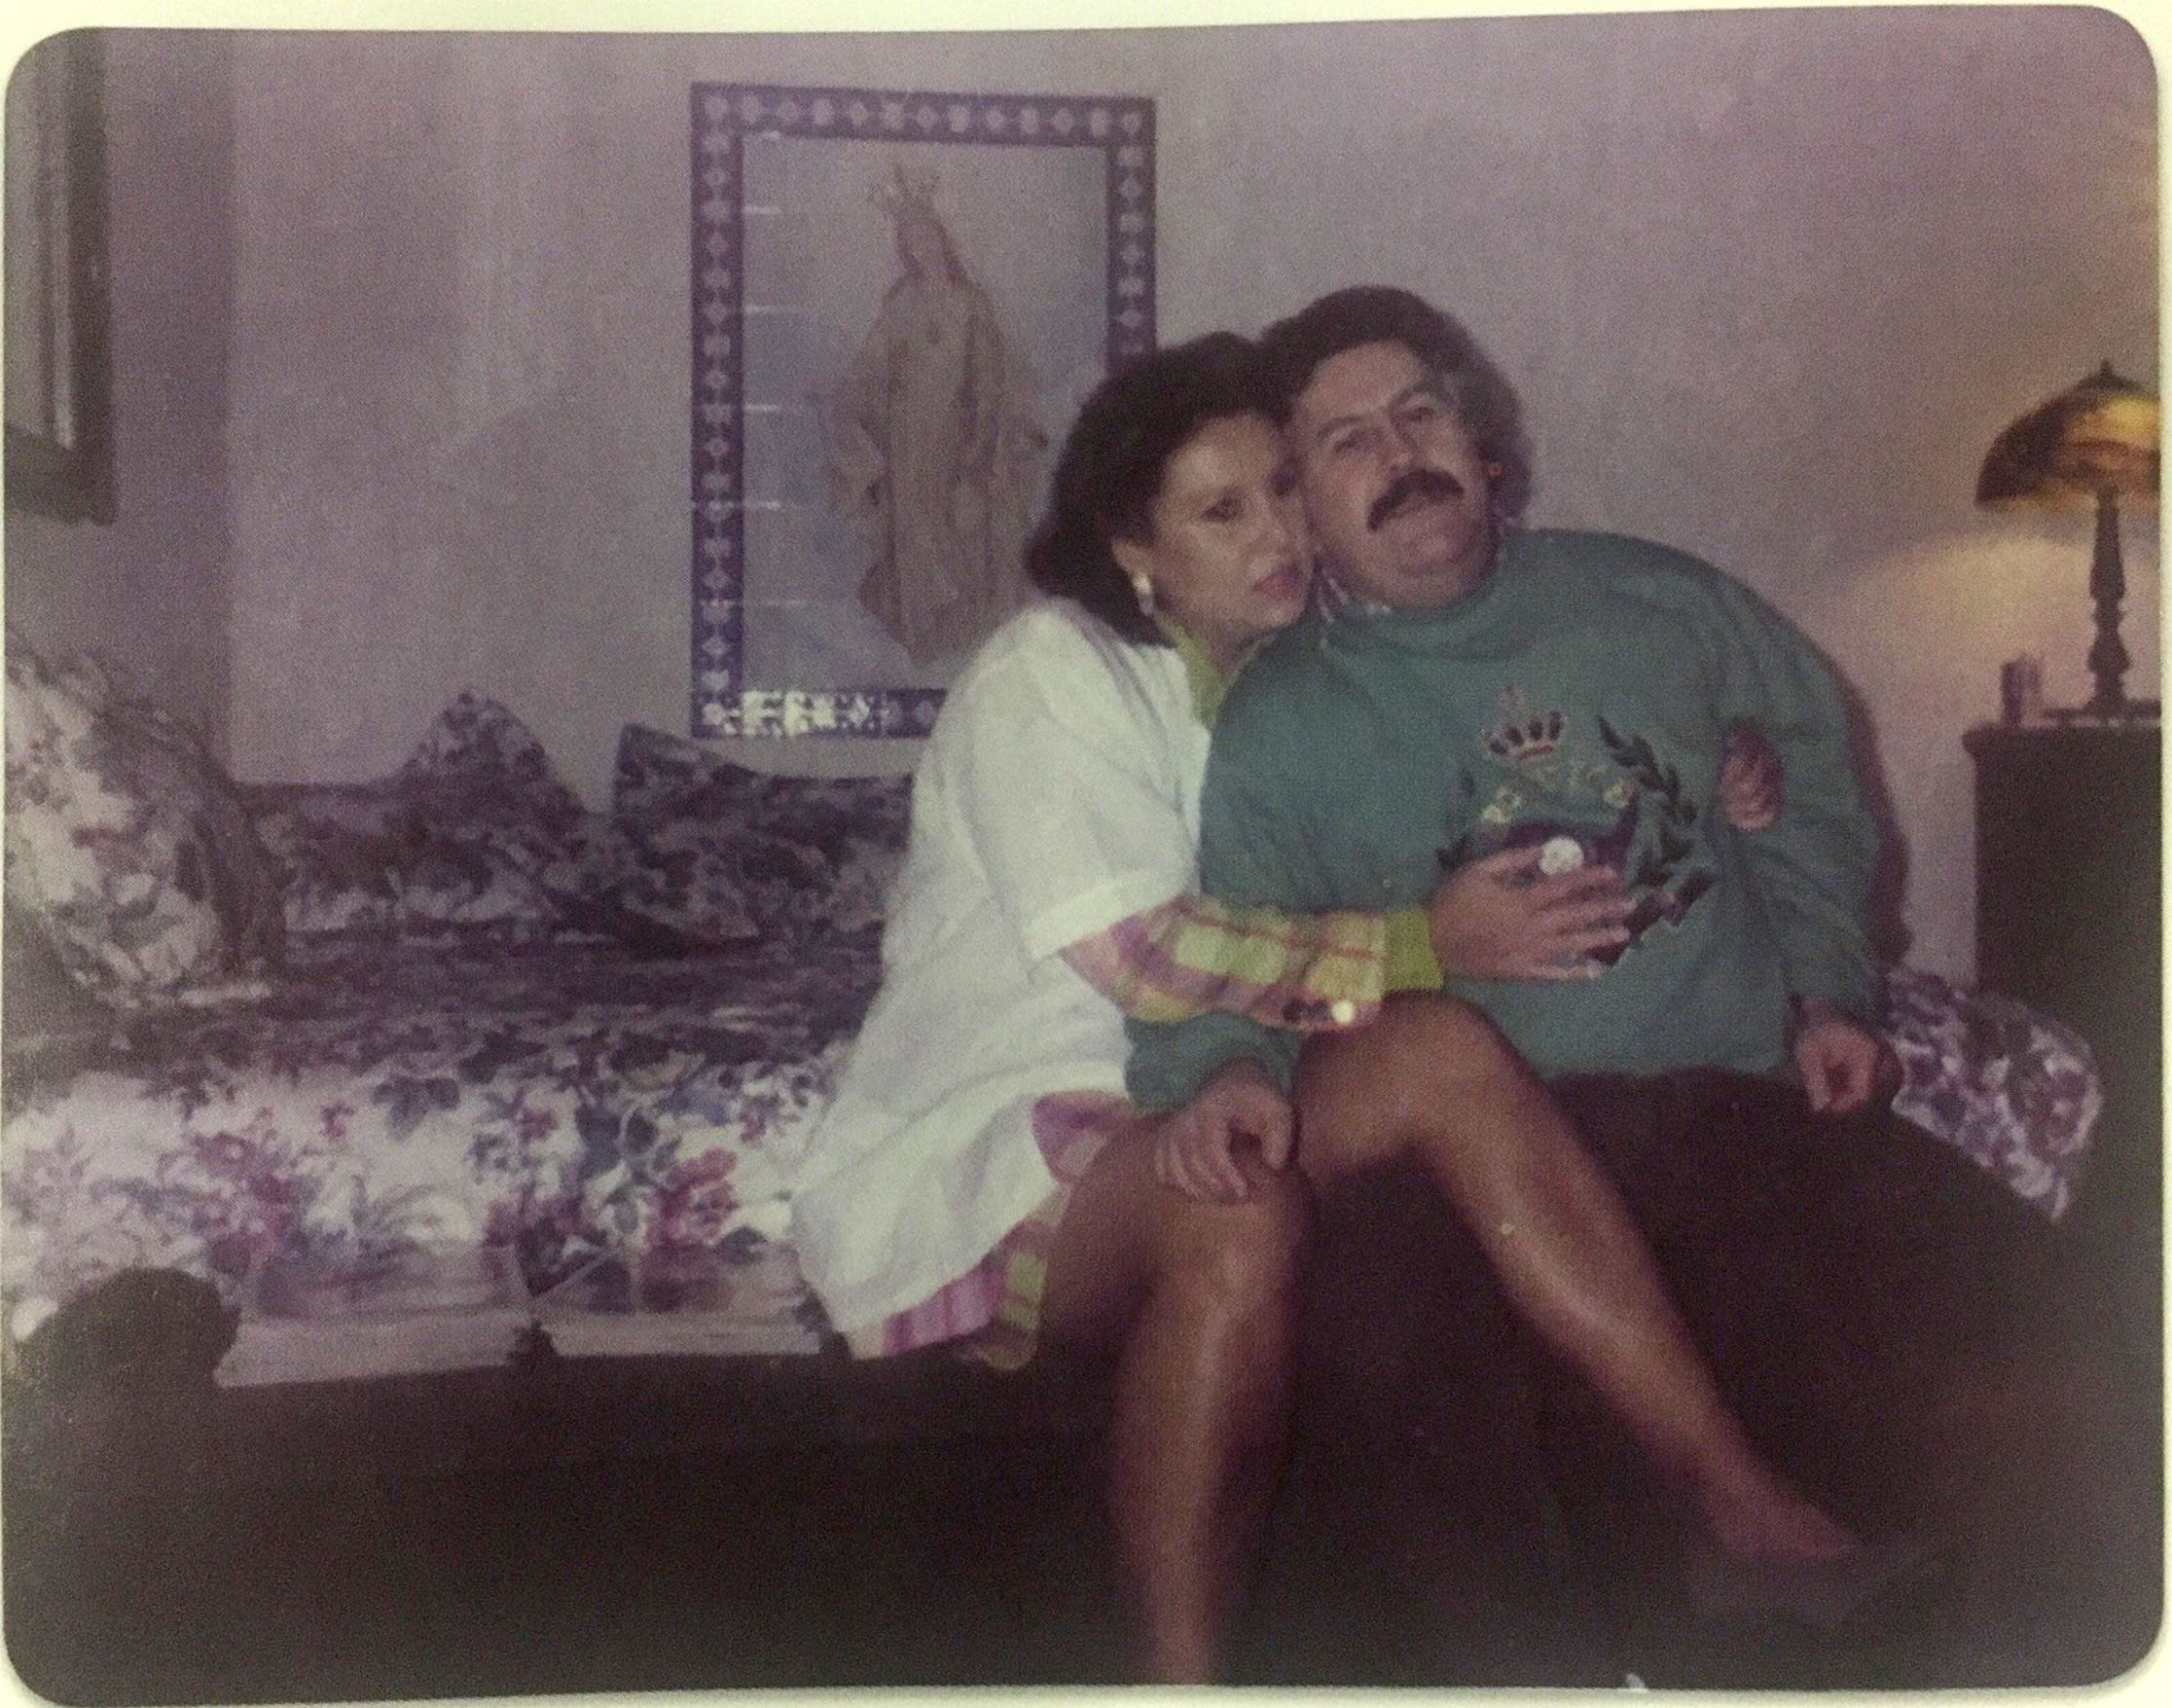 24 de diciembre de 1991. Navidad en la cárcel La Catedral, junto con su marido Pablo Escobar, quien había construido su propia prisión en acuerdo con el Gobierno colombiano